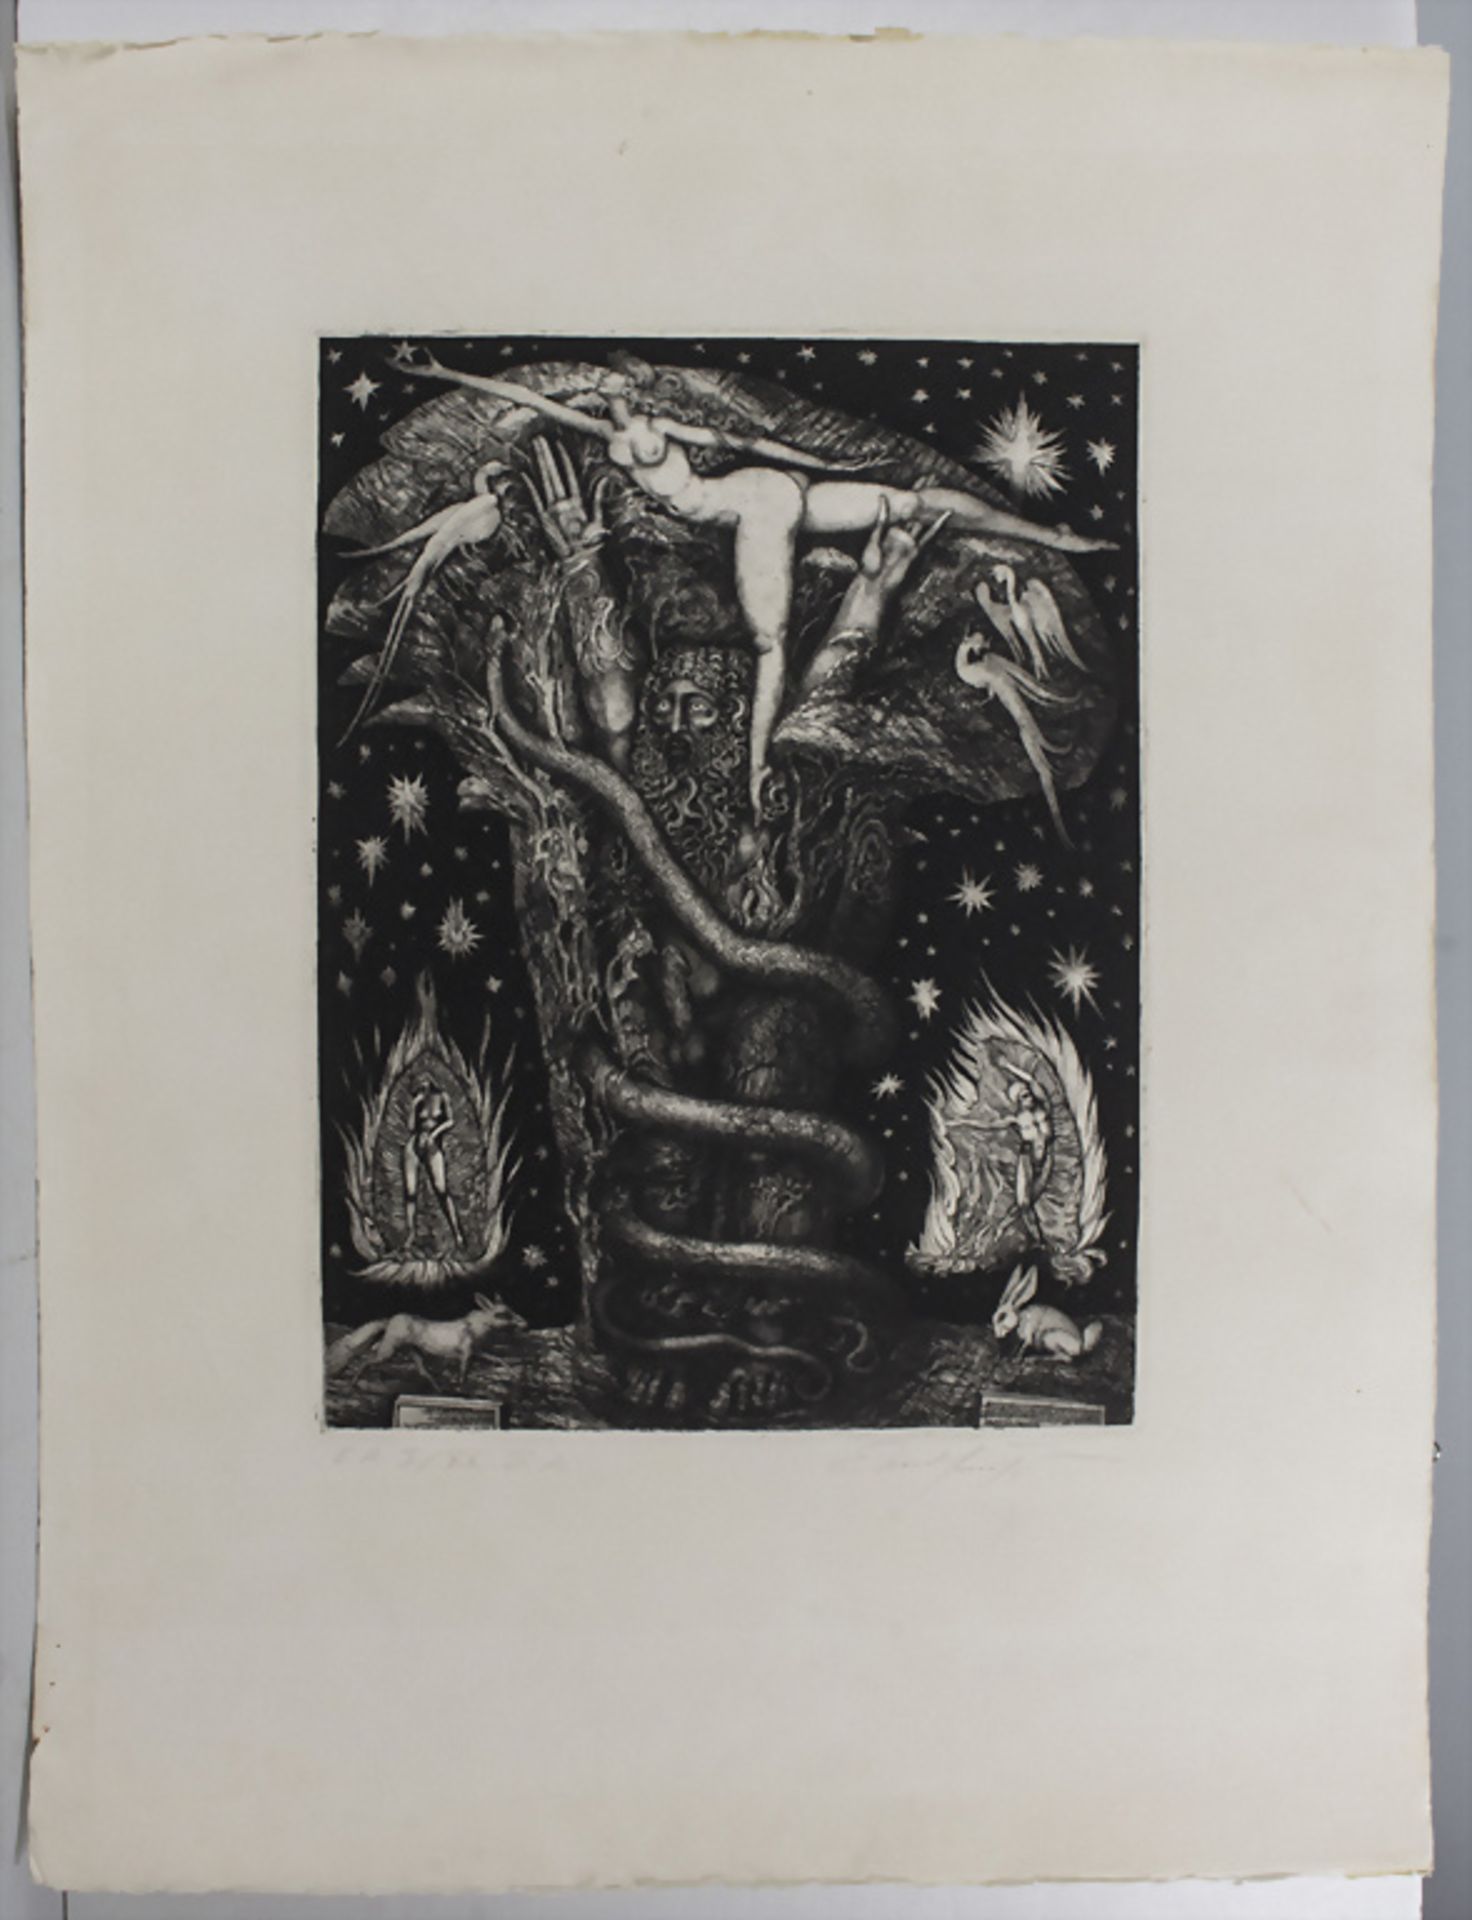 Phantastischer Realismus, Ernst Fuchs (1930-2015), 'Adams Traum' / 'Adam's dream', 1969 - Bild 2 aus 5